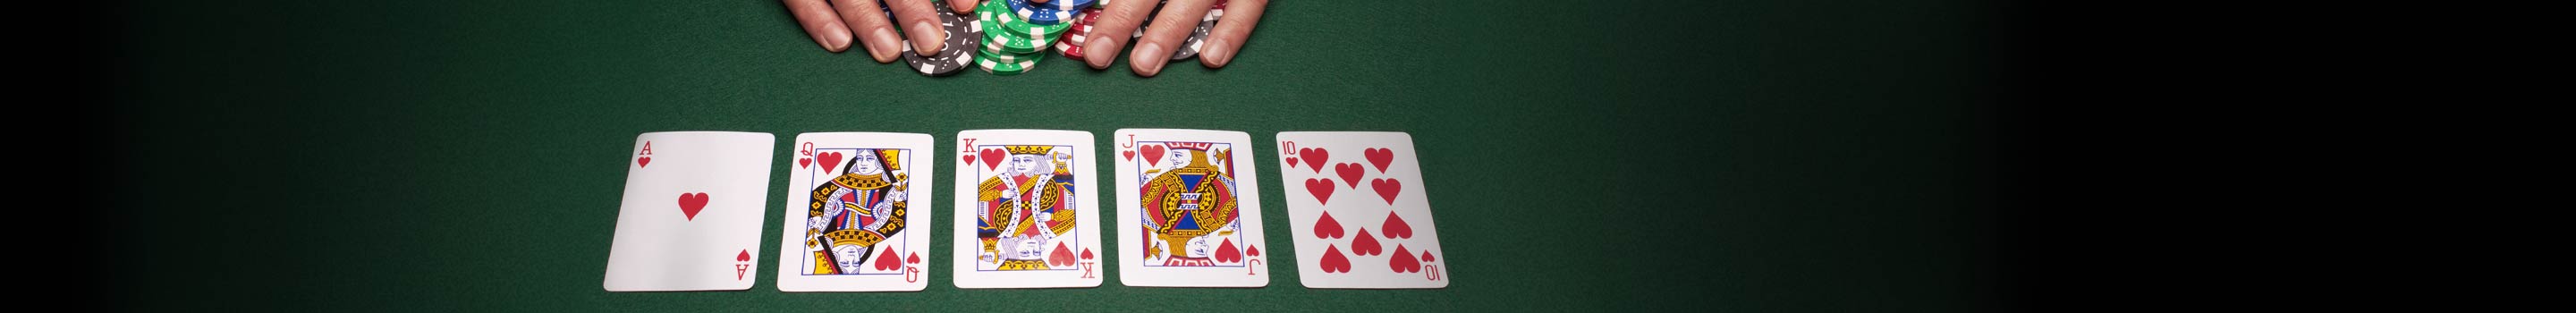 Póker kezek rangsora